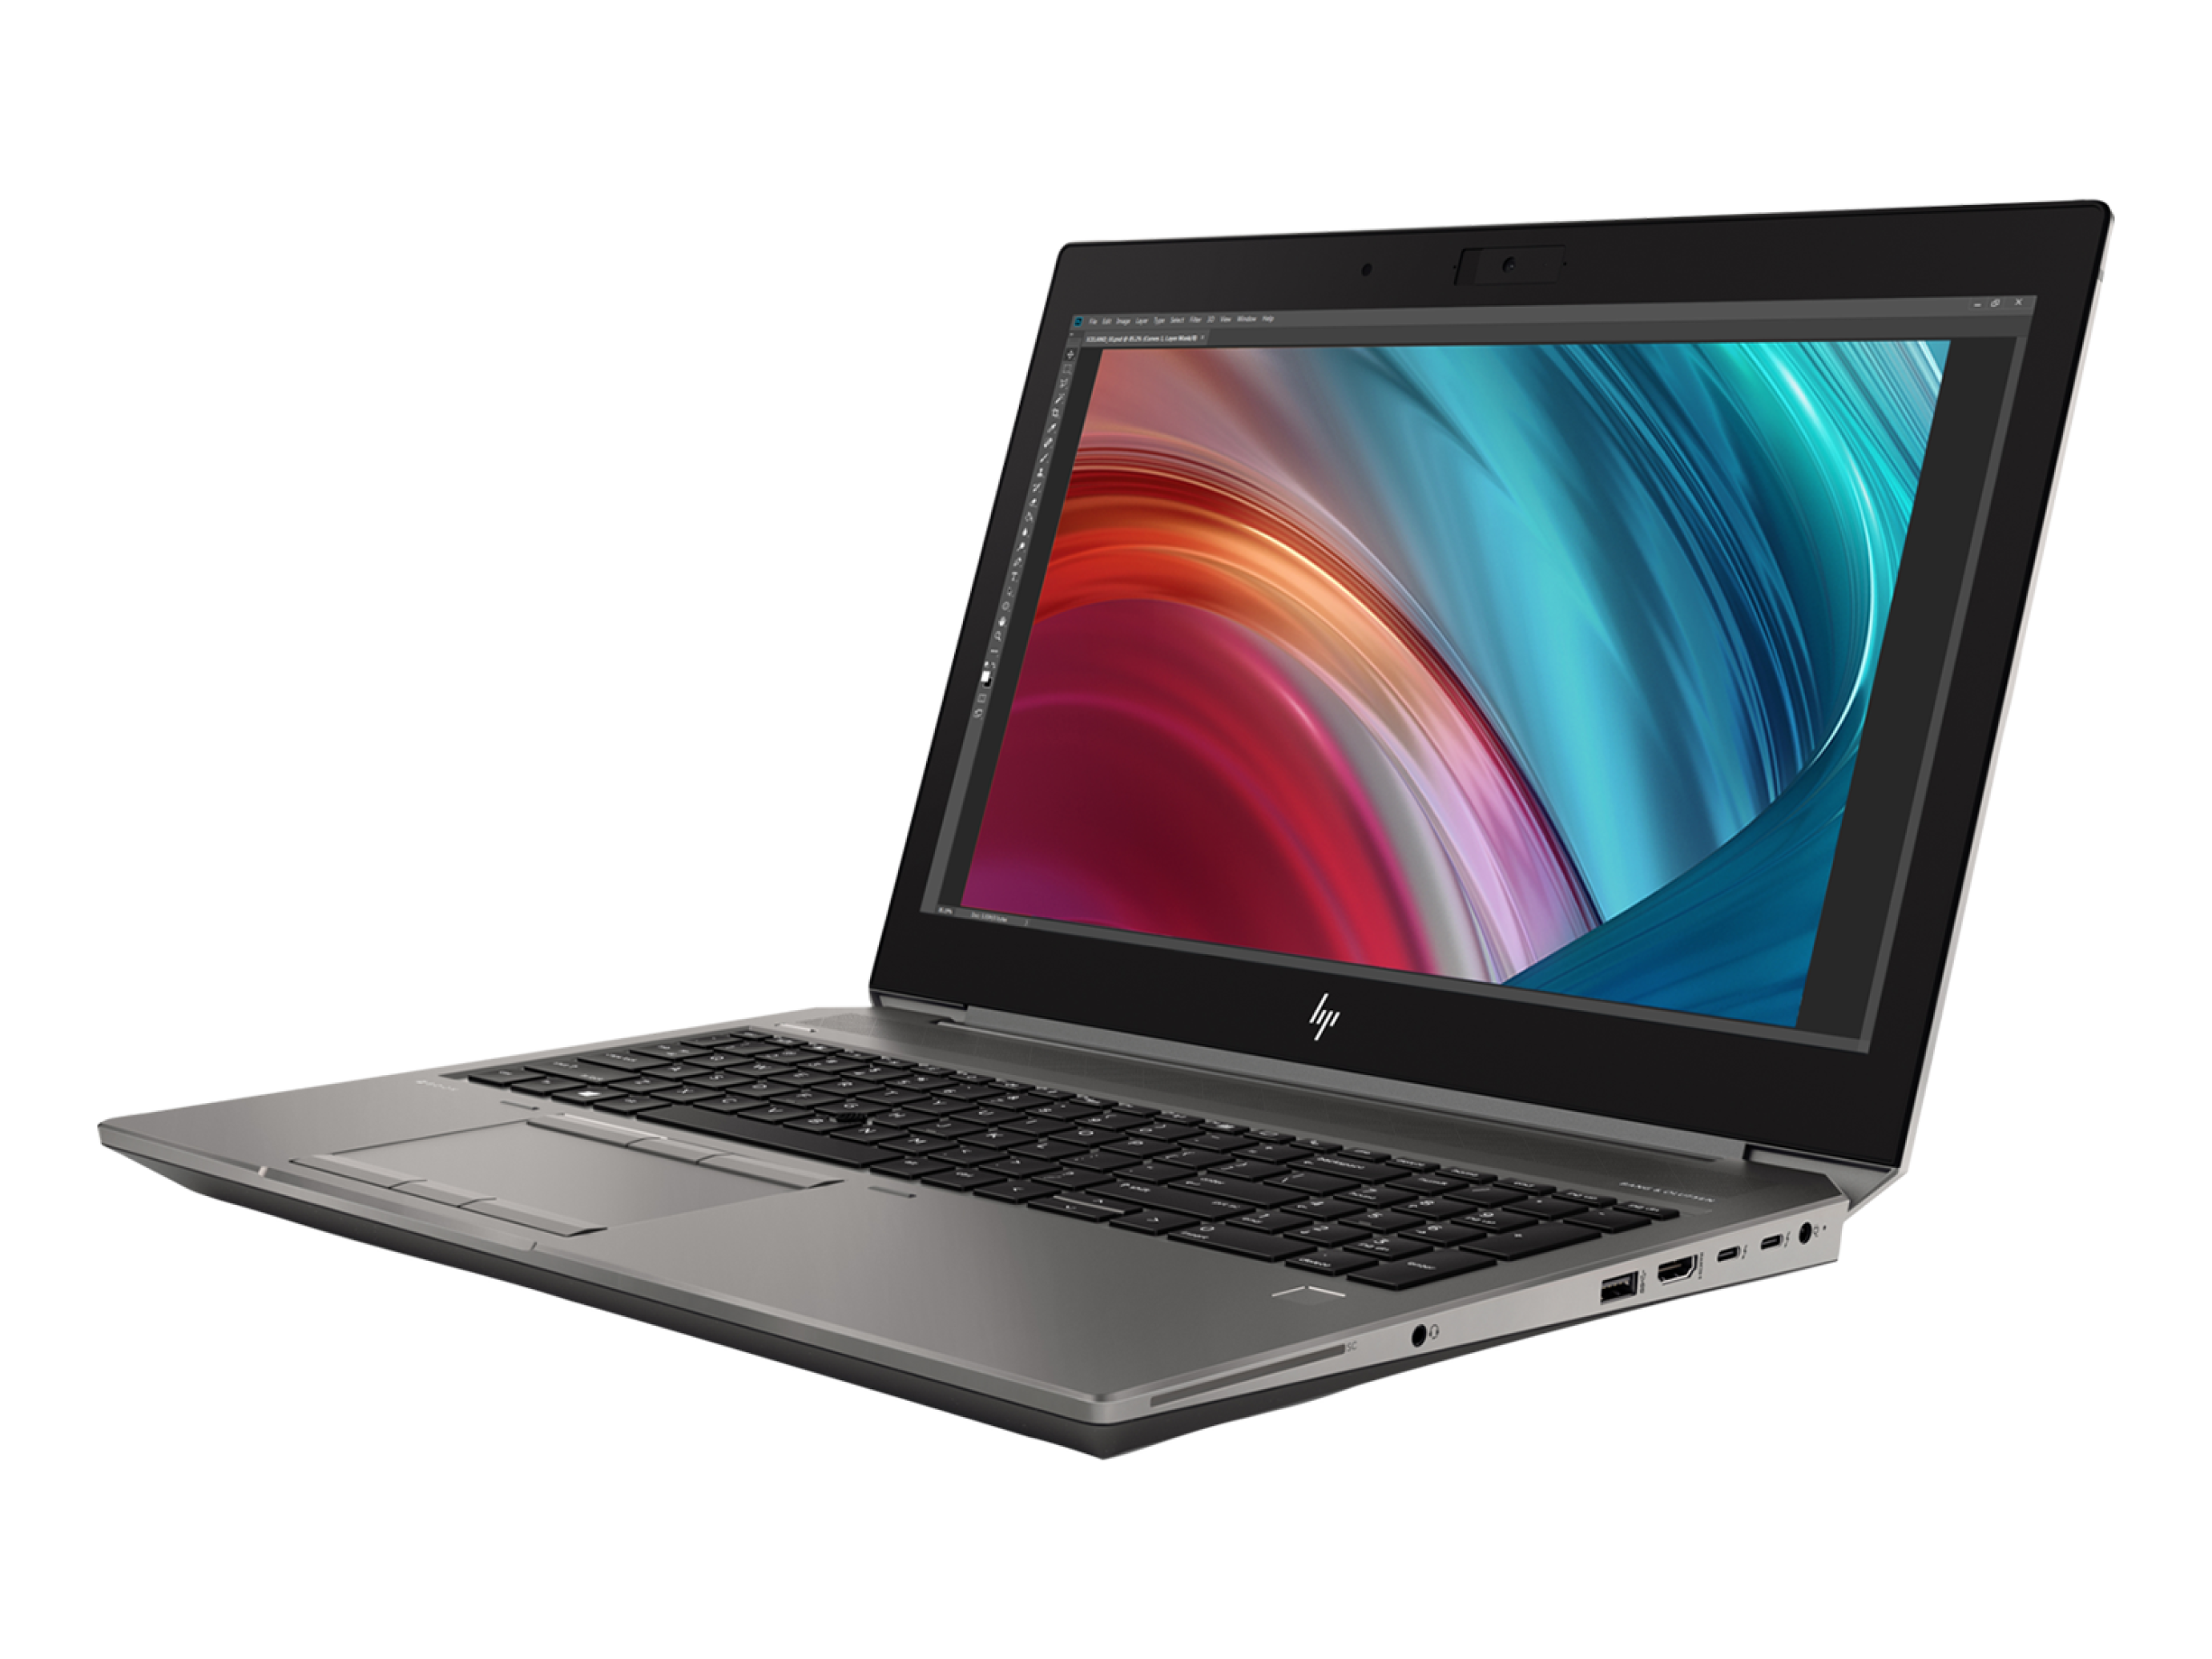  خرید و قیمت لپ تاپ اچ پی HP ZBook 15 G6 i7 9750H | لاکچری لپتاپ 